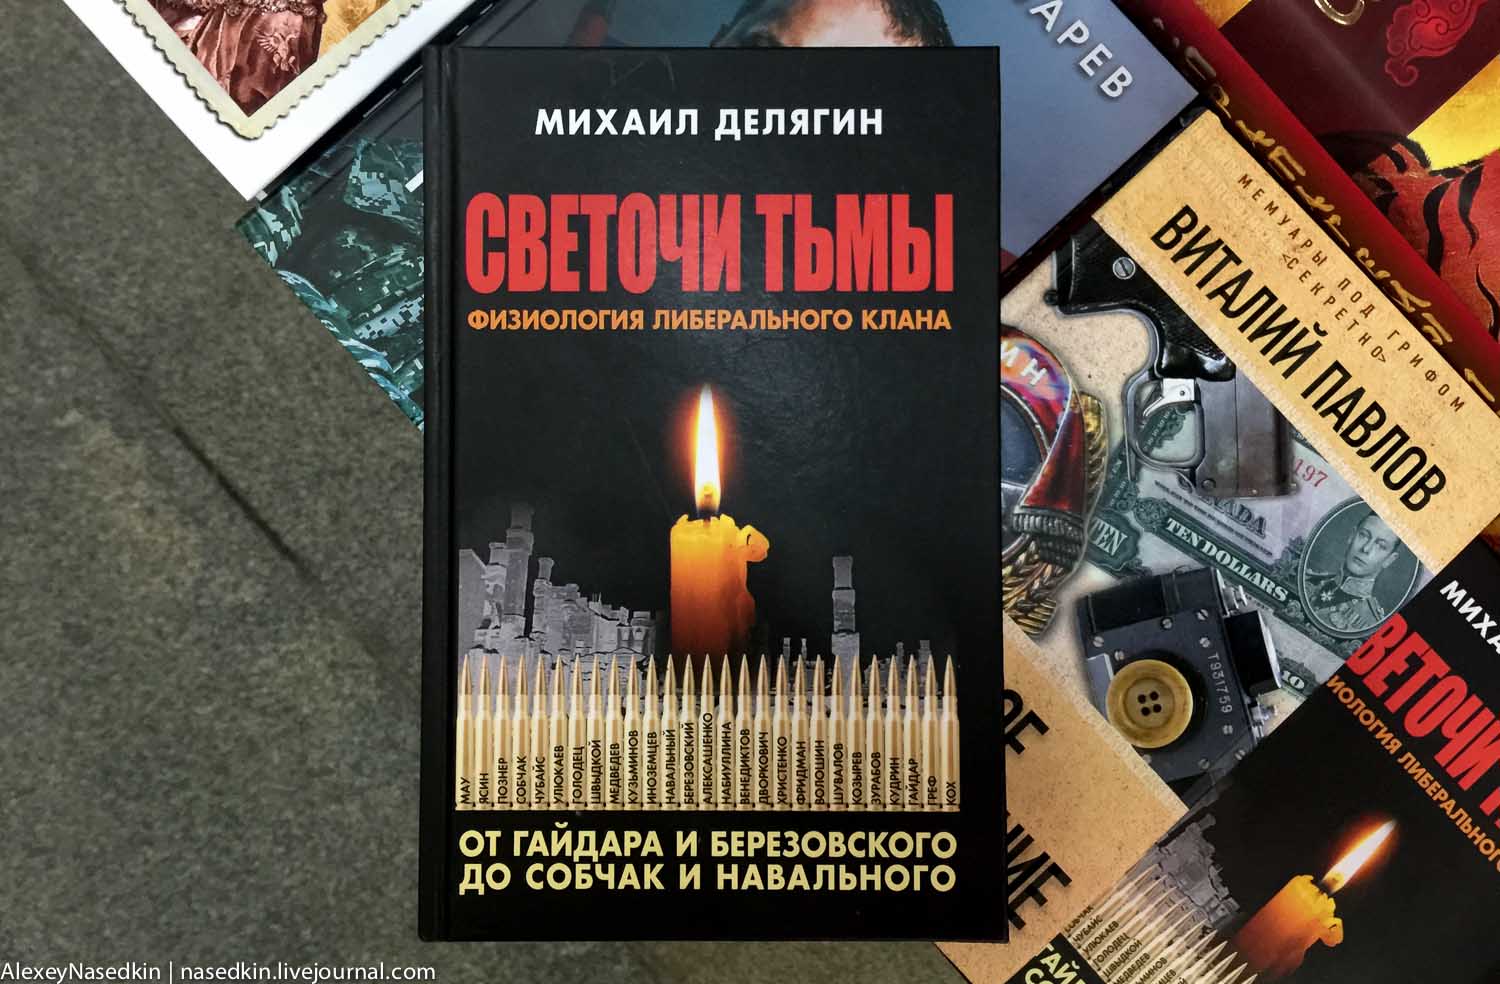 Чем торгуют в московских книжных магазинах IMG_0035.jpg